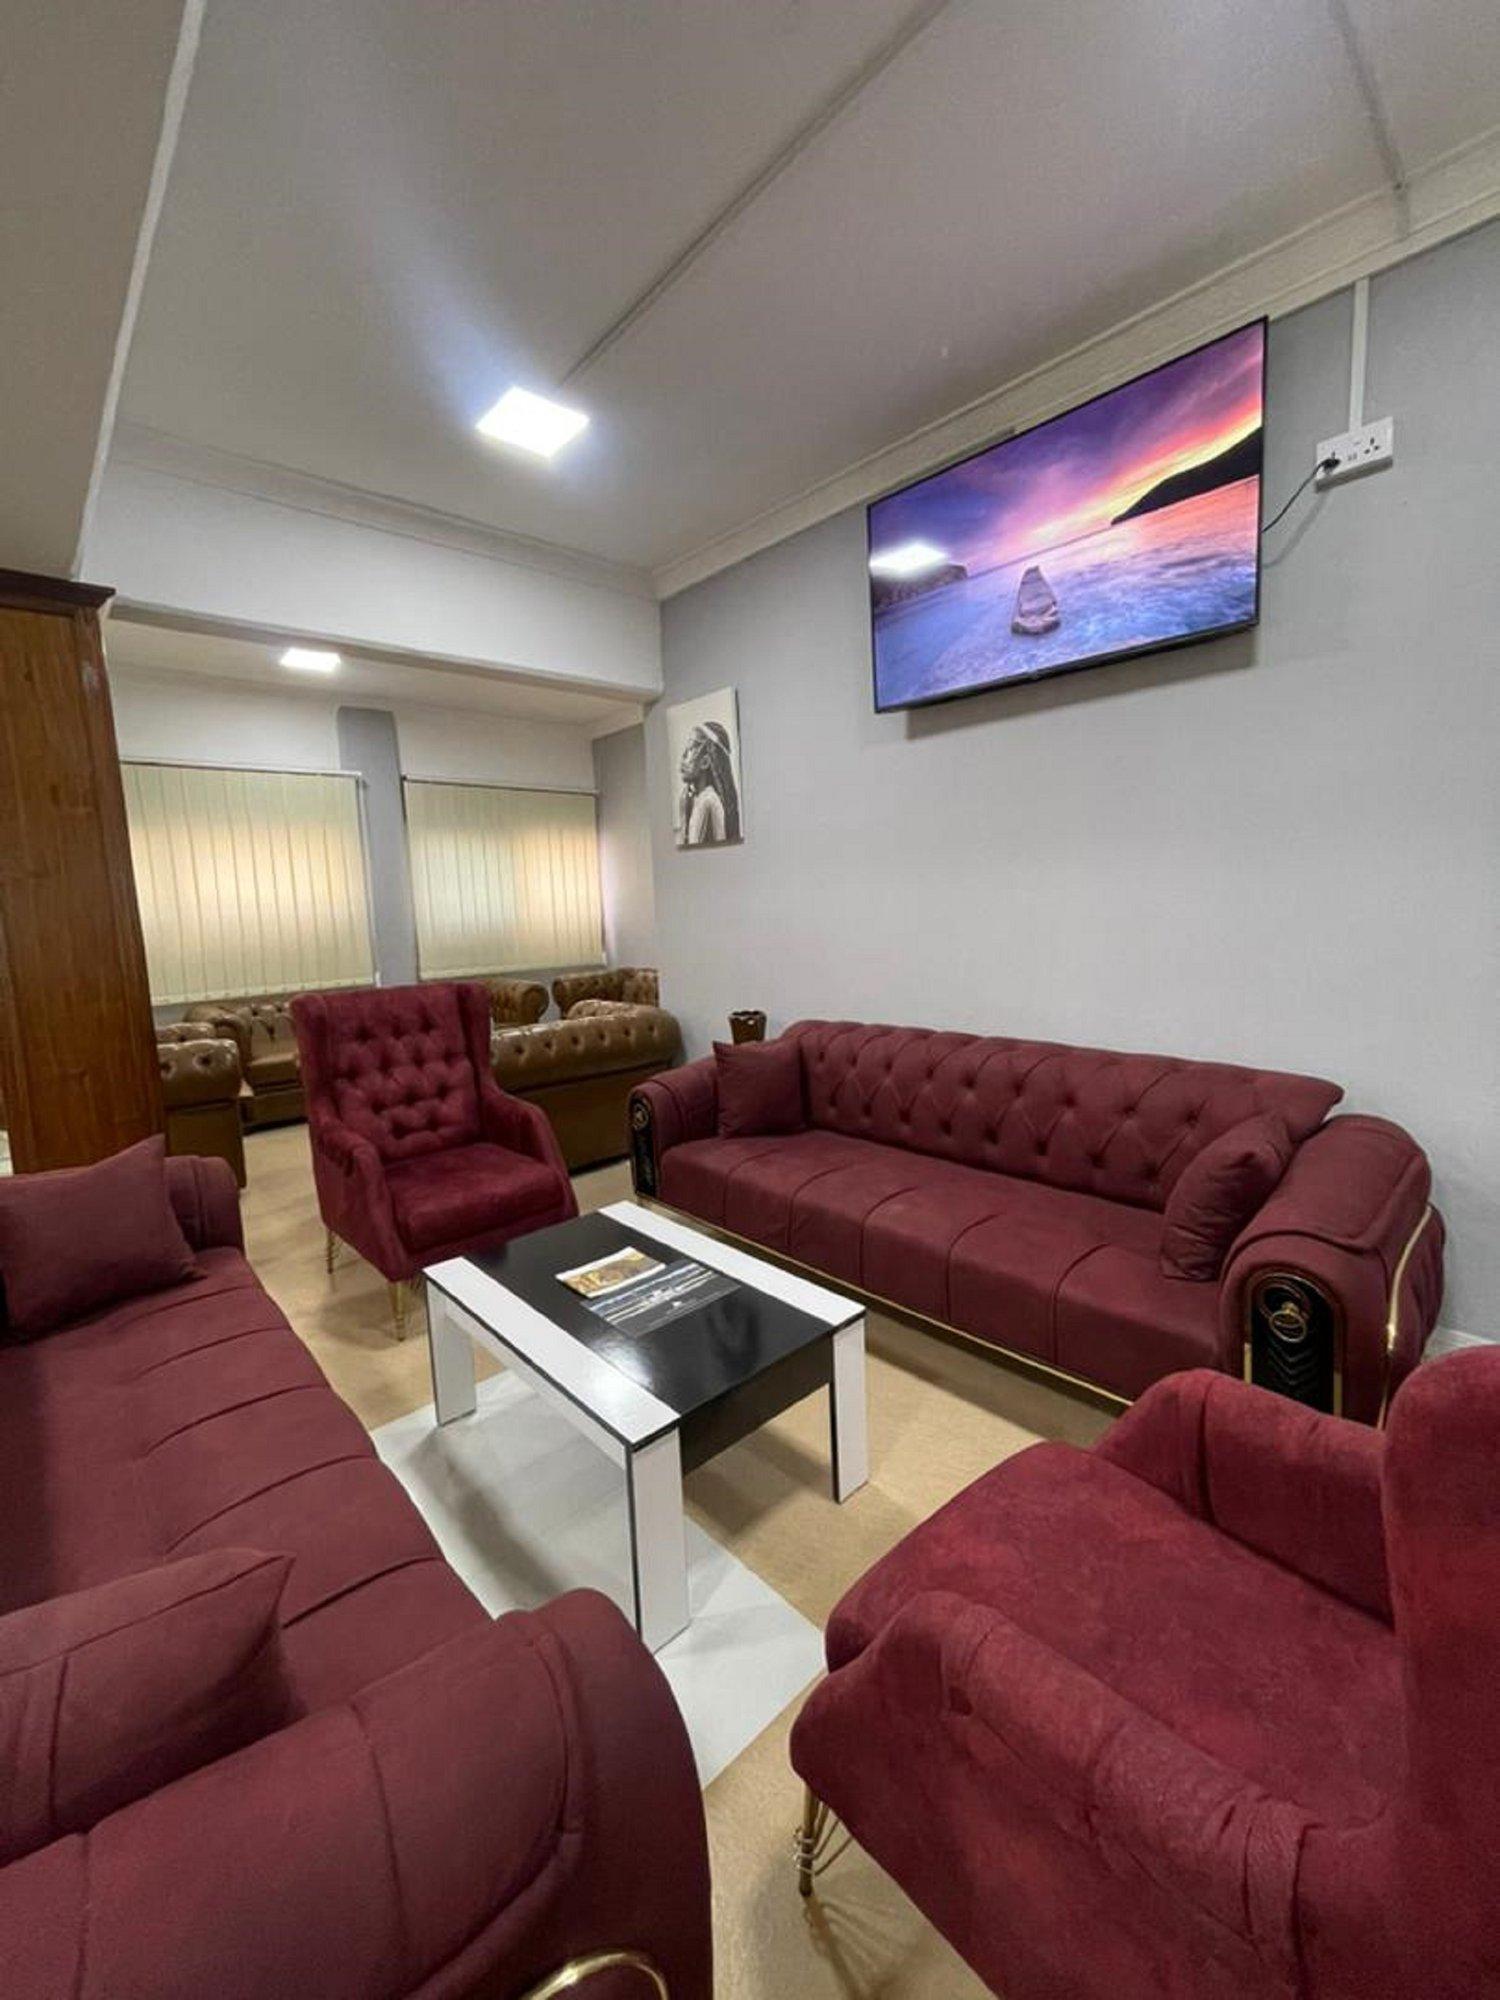 The Premium Lounge Zanzibar image 7 of 7